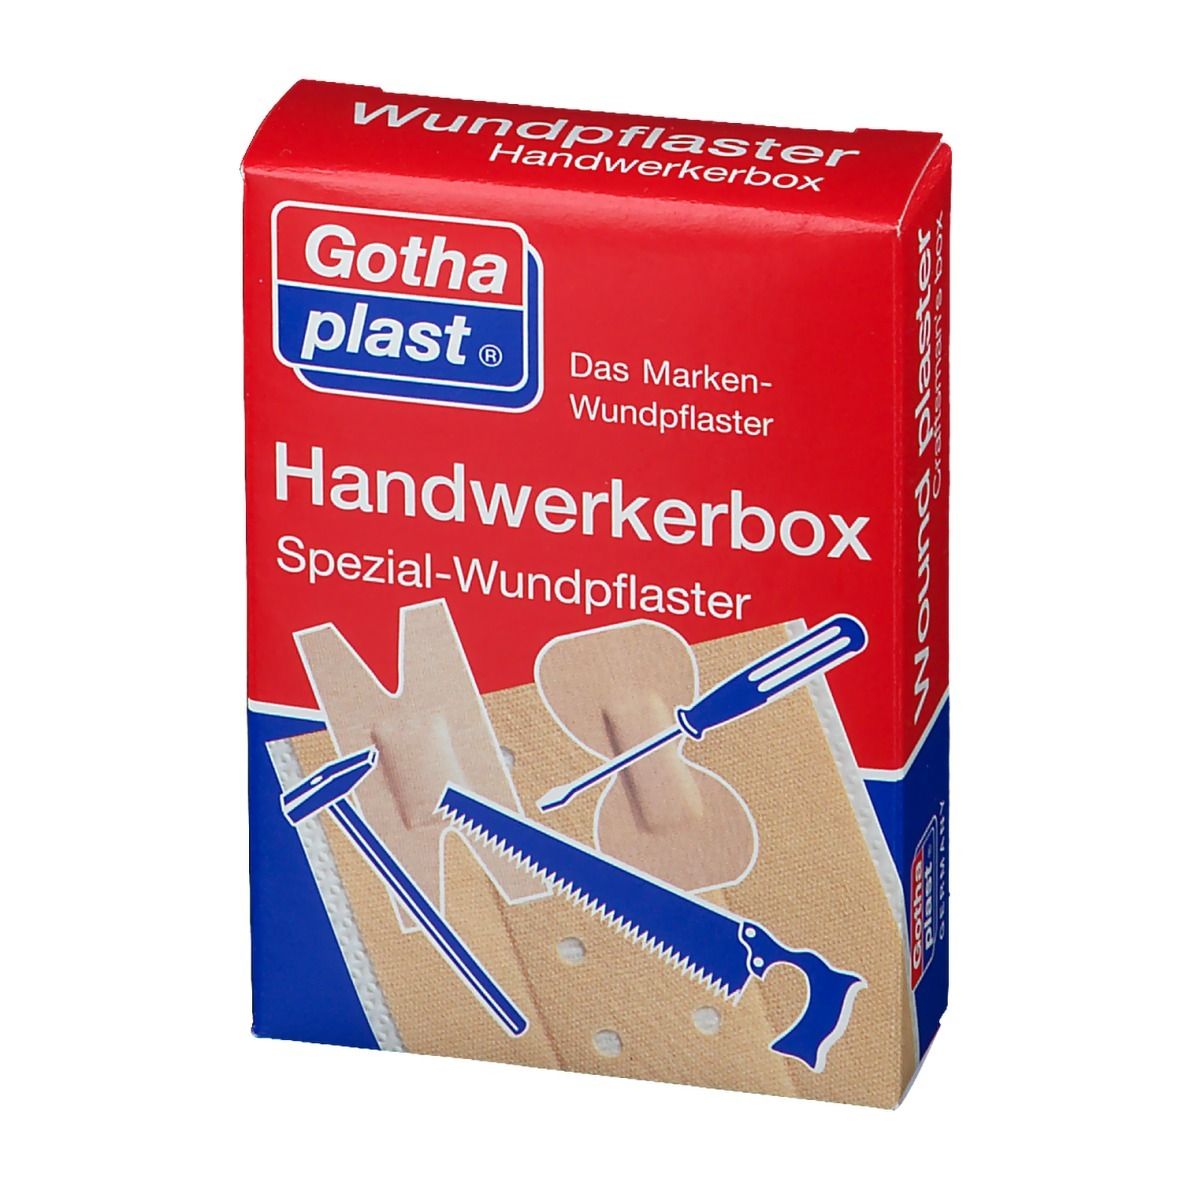 Gothaplast® Handwerker Pflasterbox 1 St - SHOP APOTHEKE